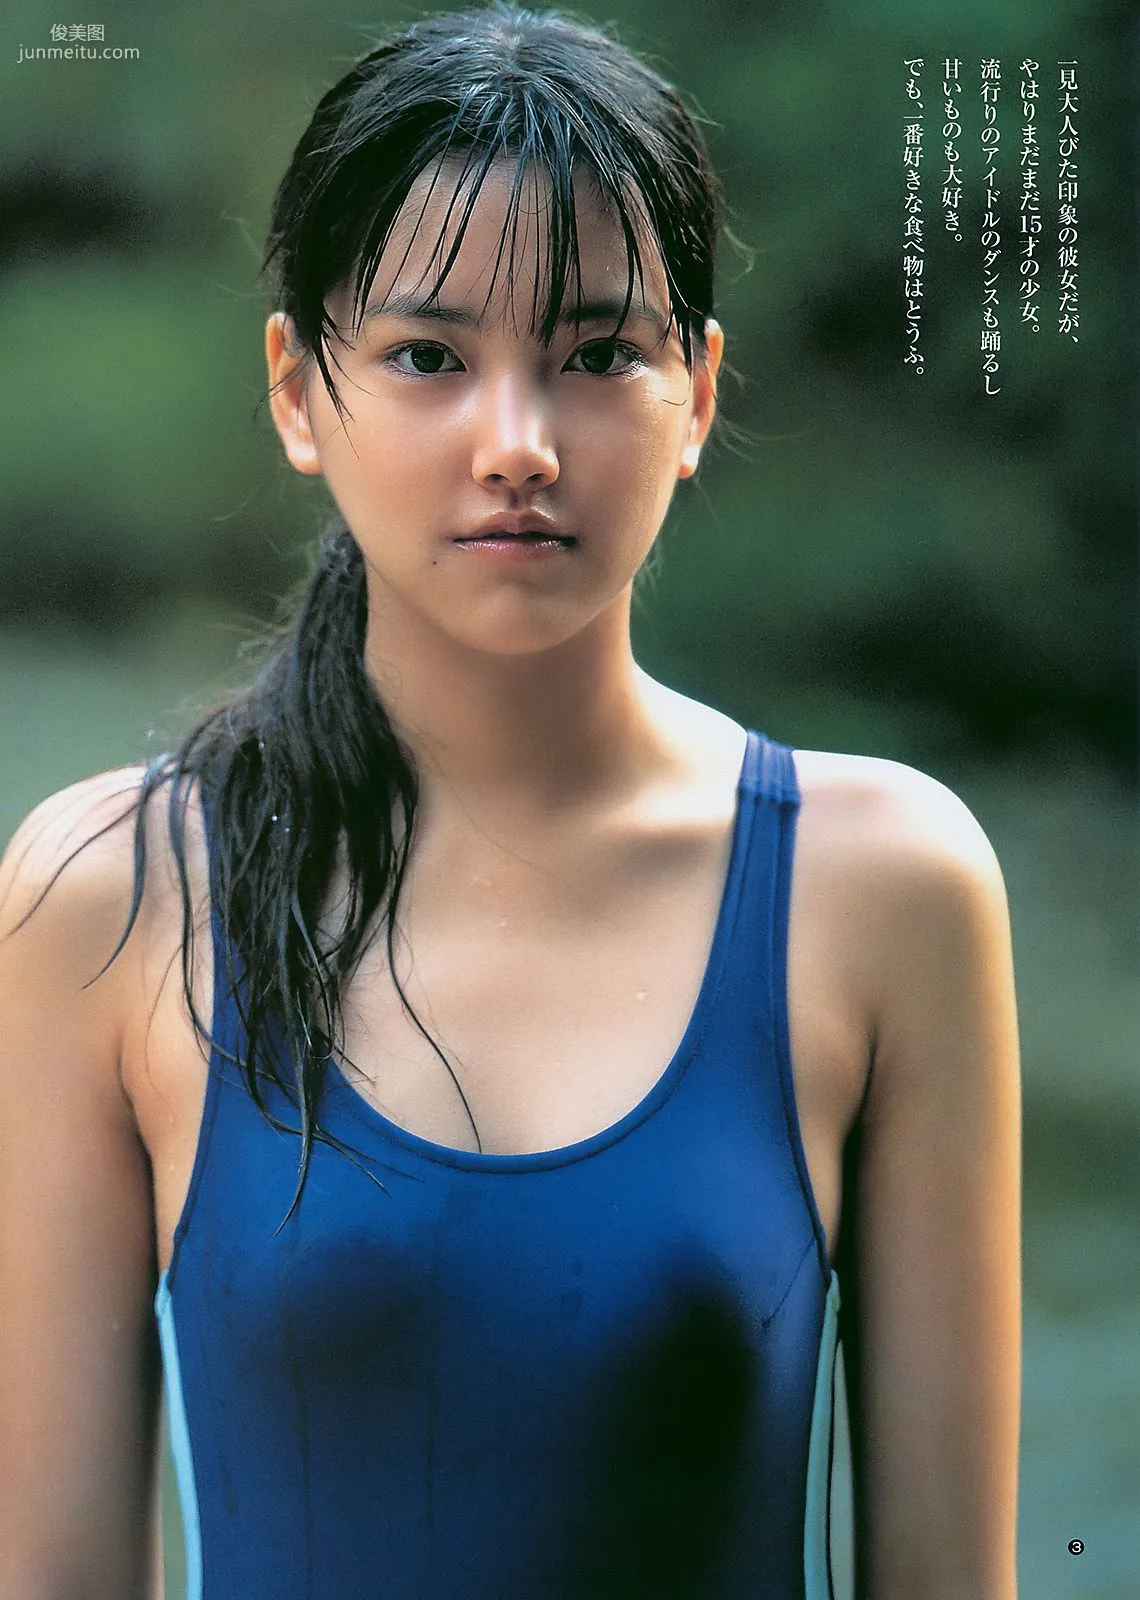 柏木由紀 竹富聖花 [Weekly Young Jump] 2011年No.08 写真杂志11